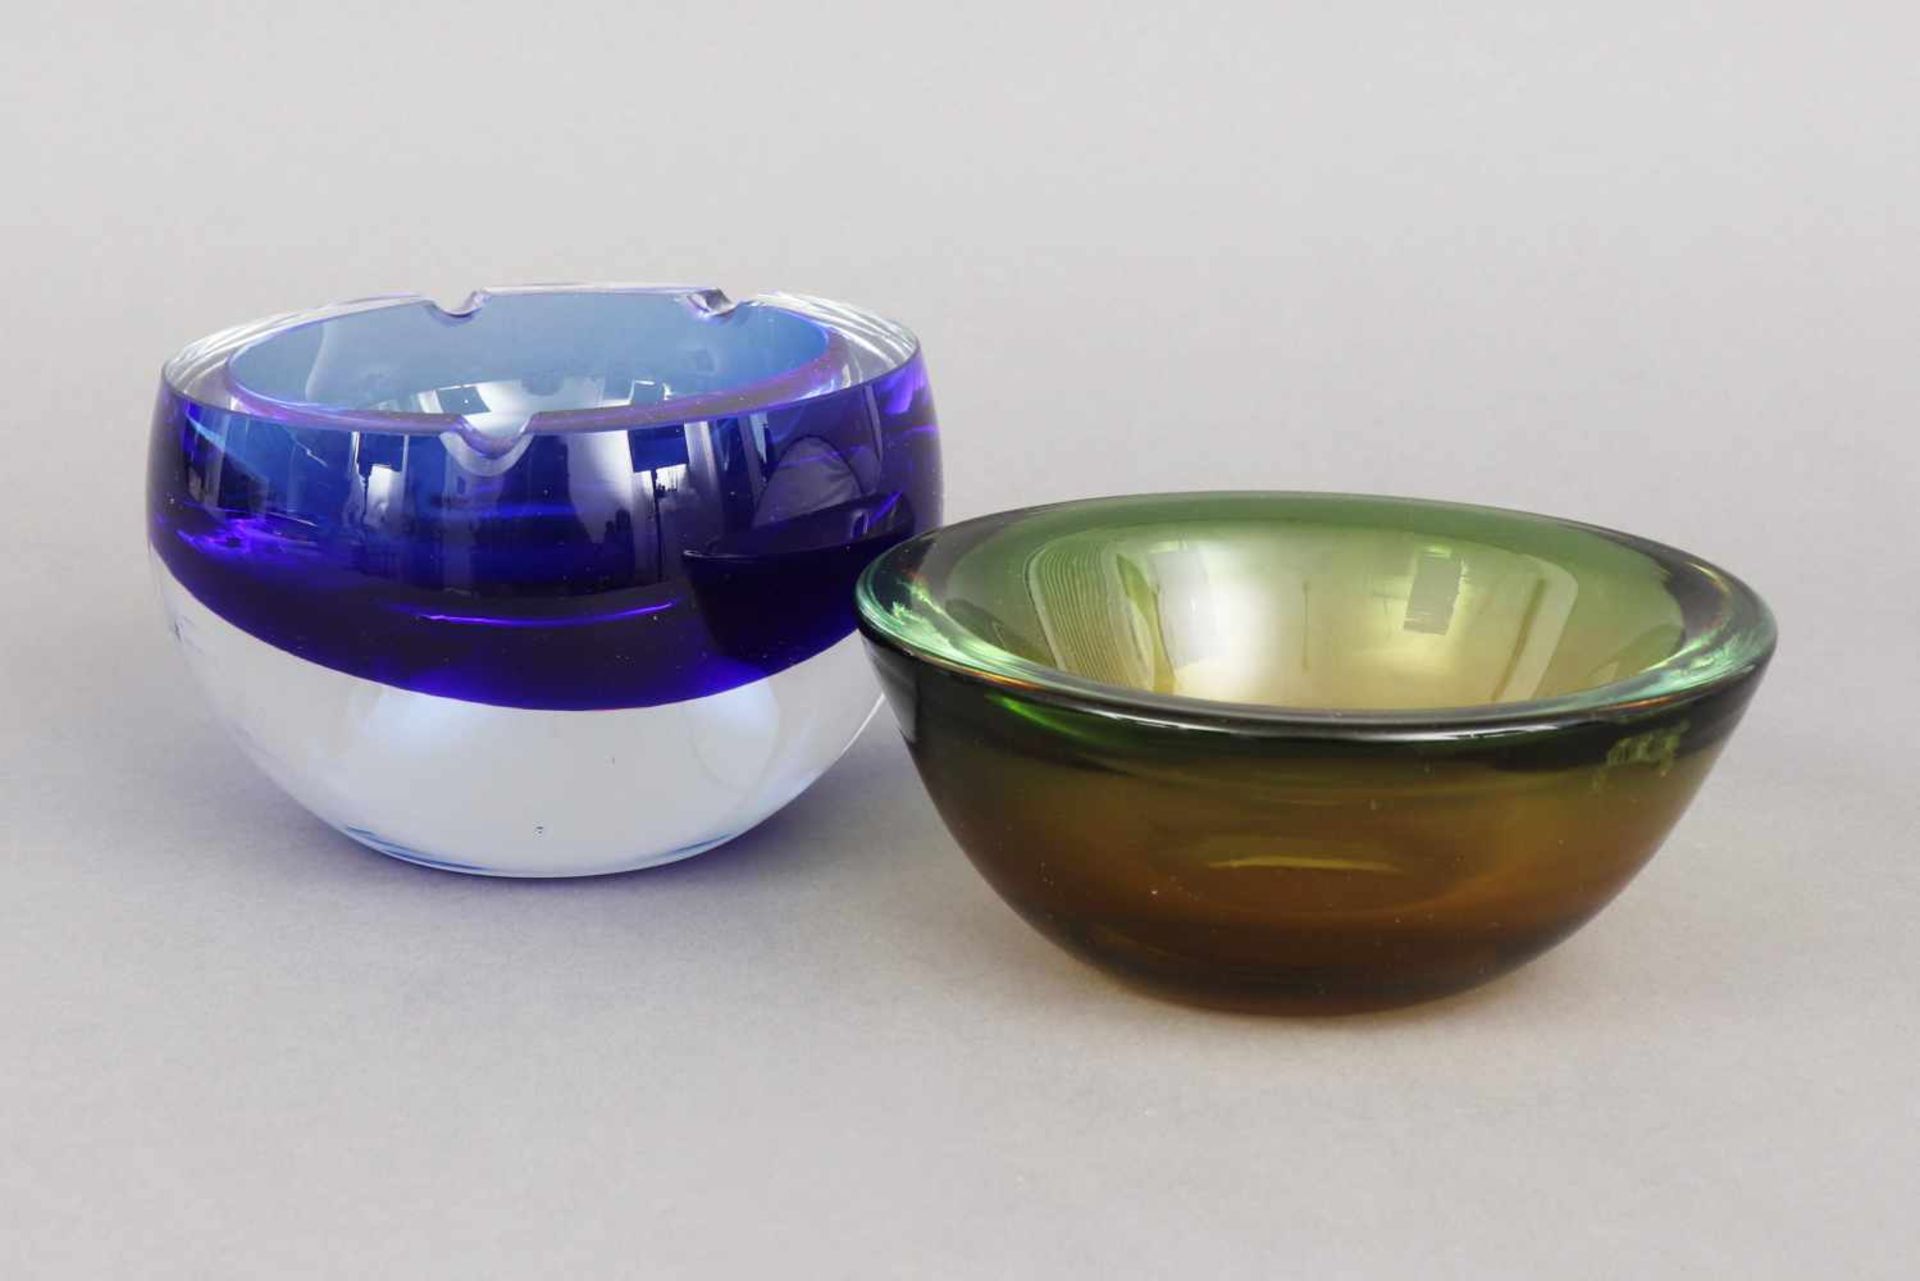 2 MURANO Glas-Schalen1x Ascher, blaues (Sommerso) und farbloses Glas, 1x runde Schale, gelb-grünes